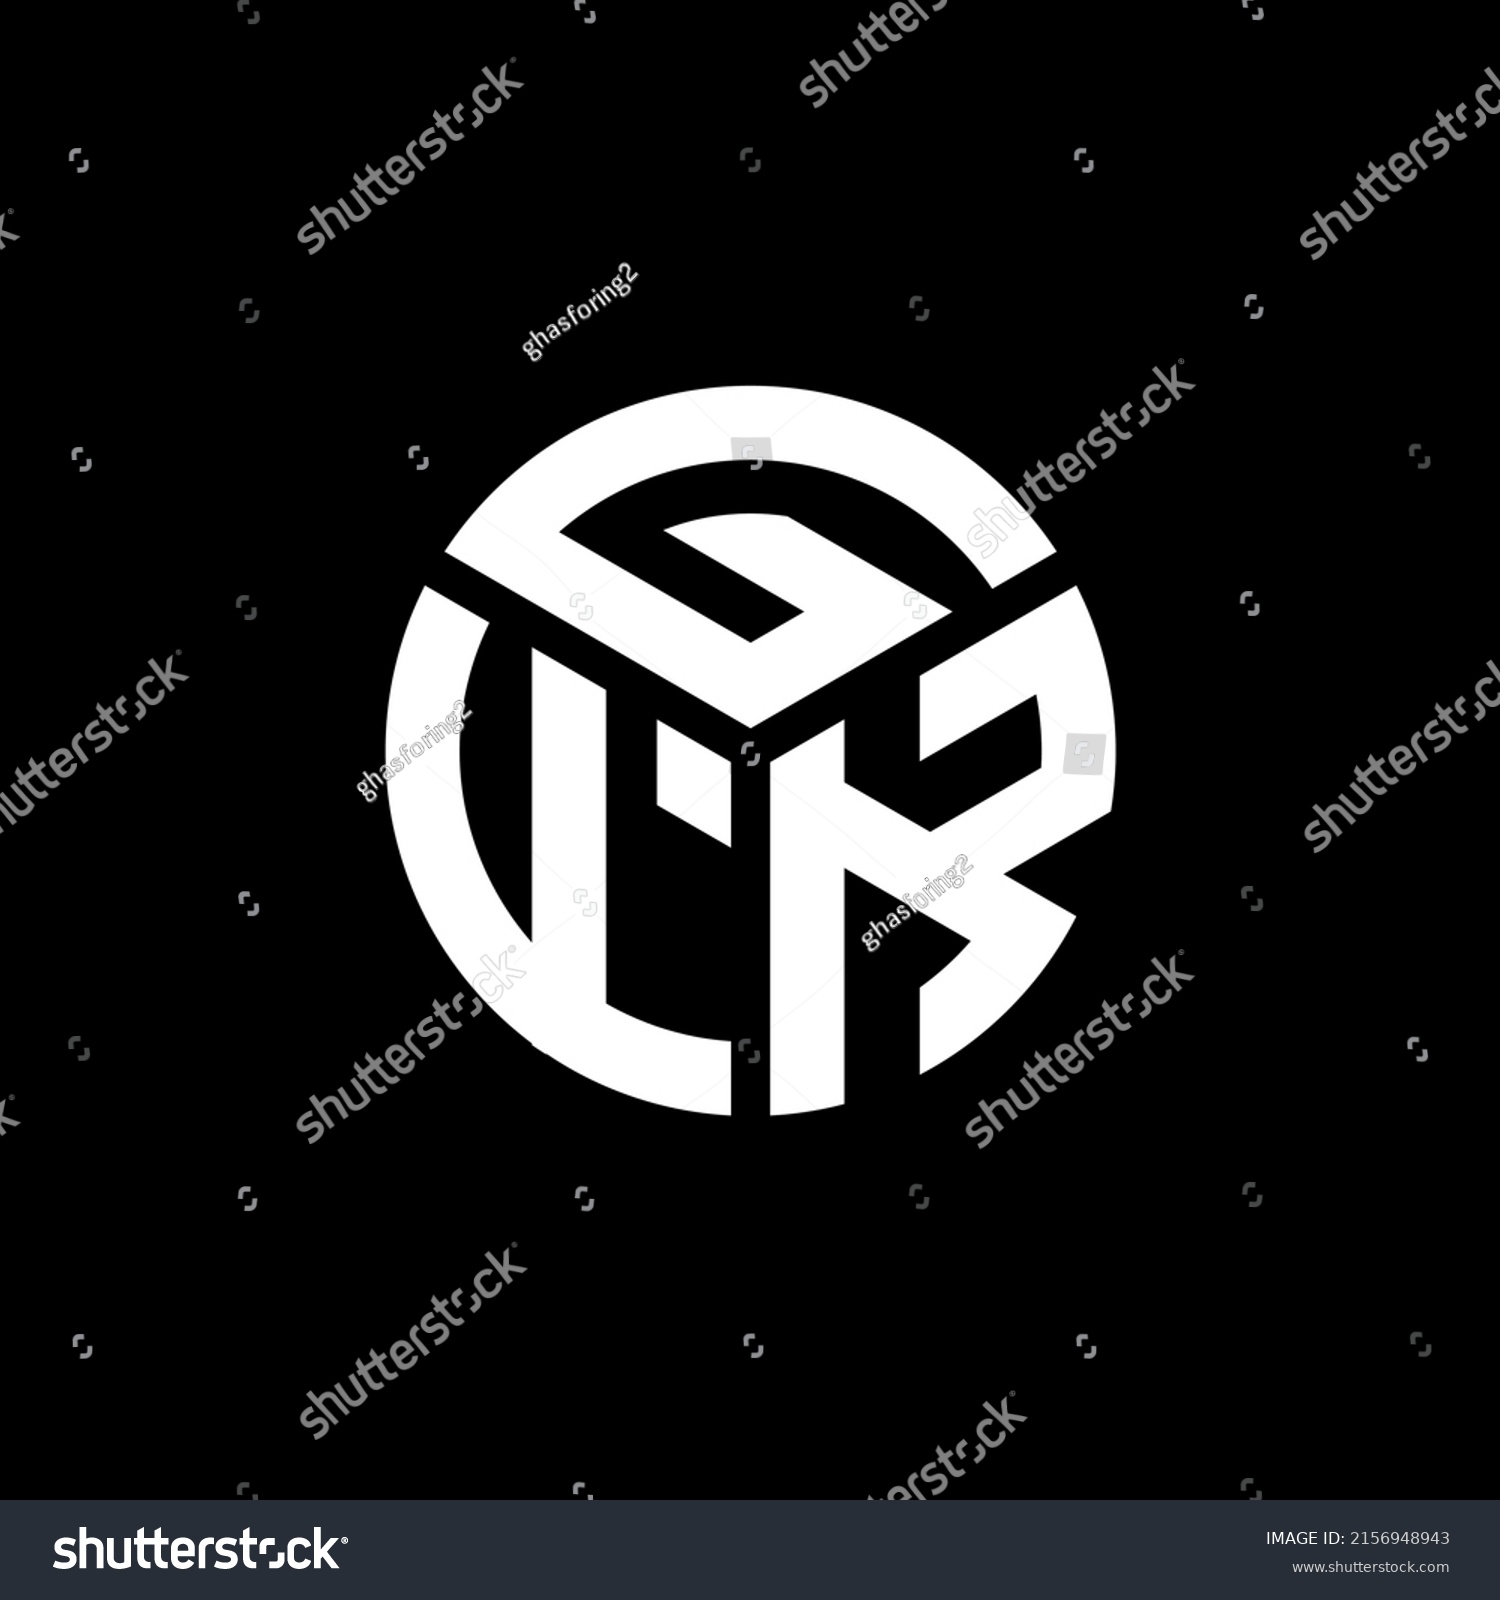 Gfk Letter Logo Design On Black Stock Vector (Royalty Free) 2156948943 ...